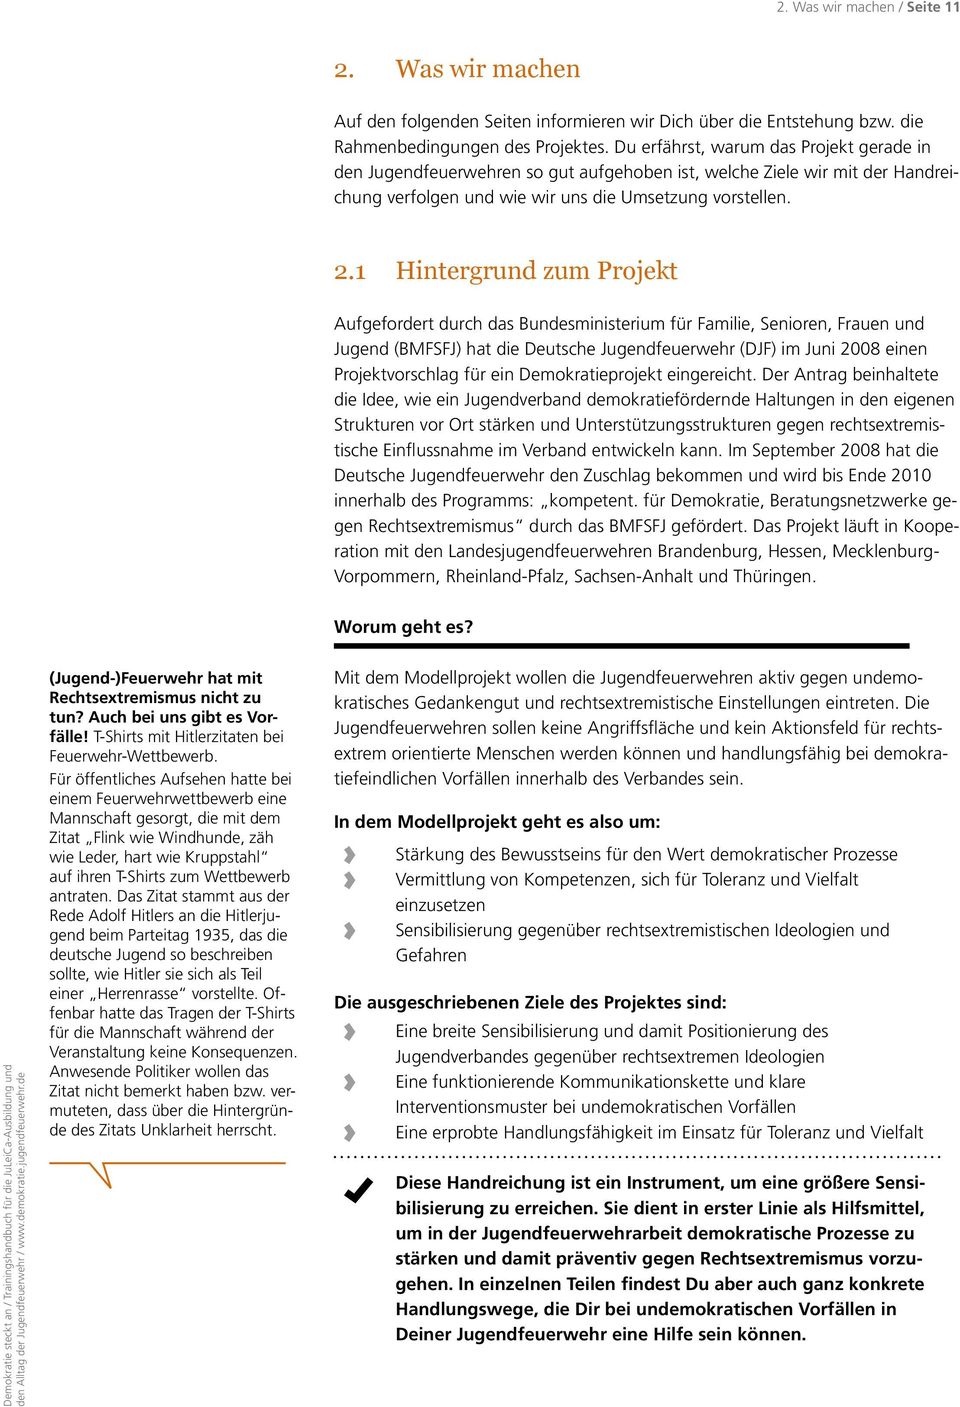 1 Hintergrund zum Projekt Aufgefordert durch das Bundesministerium für Familie, Senioren, Frauen und Jugend (BMFSFJ) hat die Deutsche Jugendfeuerwehr (DJF) im Juni 2008 einen Projektvorschlag für ein